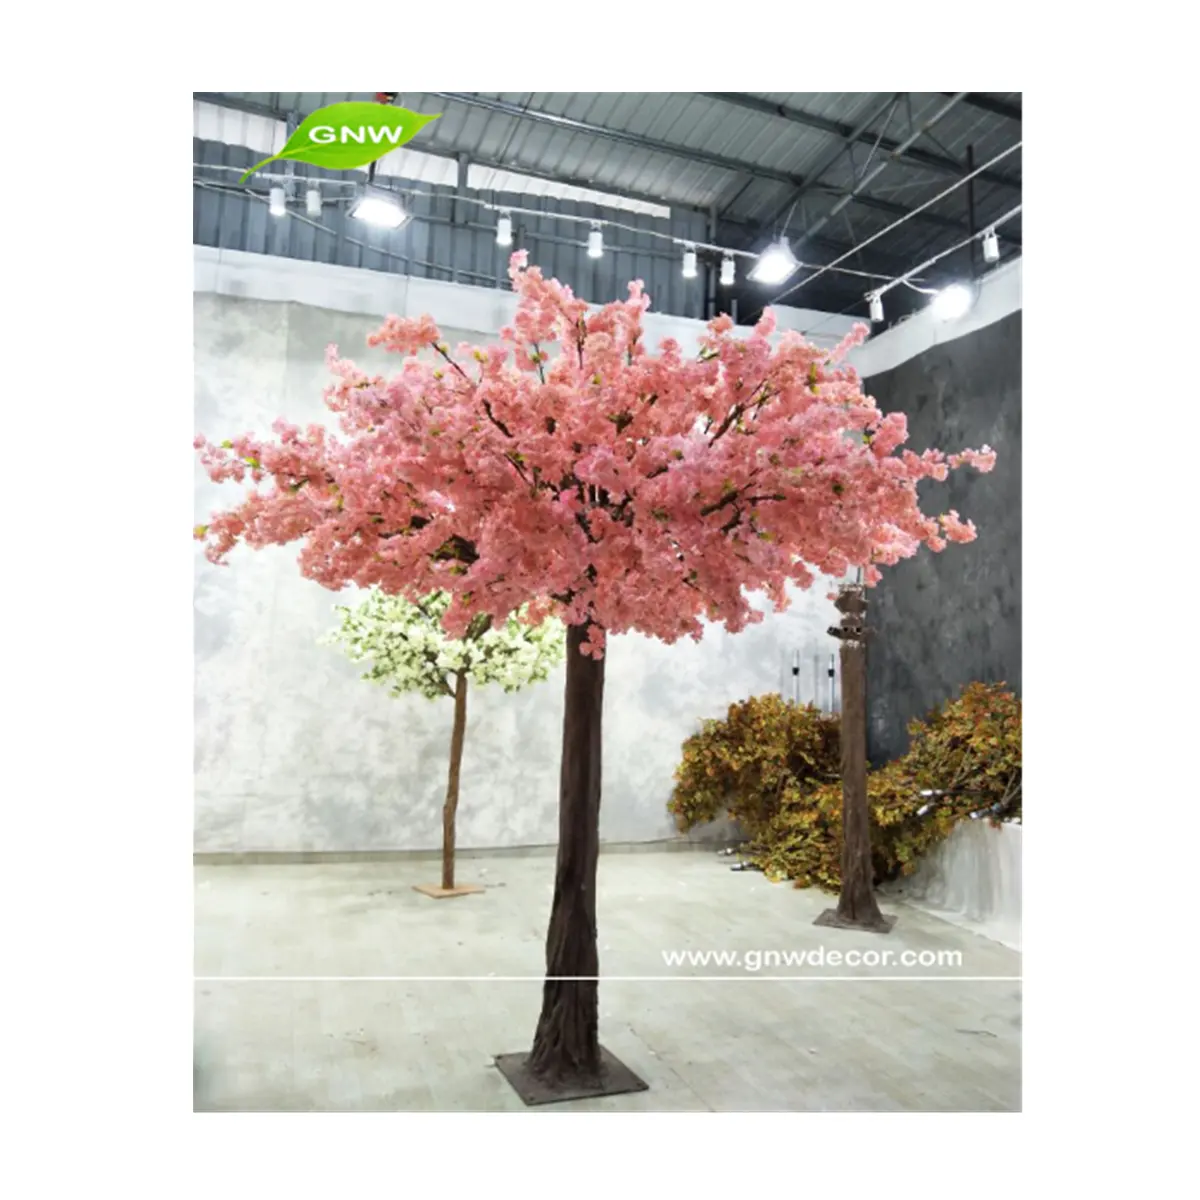 GNW BLS1604001 Bunga Sakura Kering, Pohon Manzanita Kering untuk Dekorasi Pernikahan